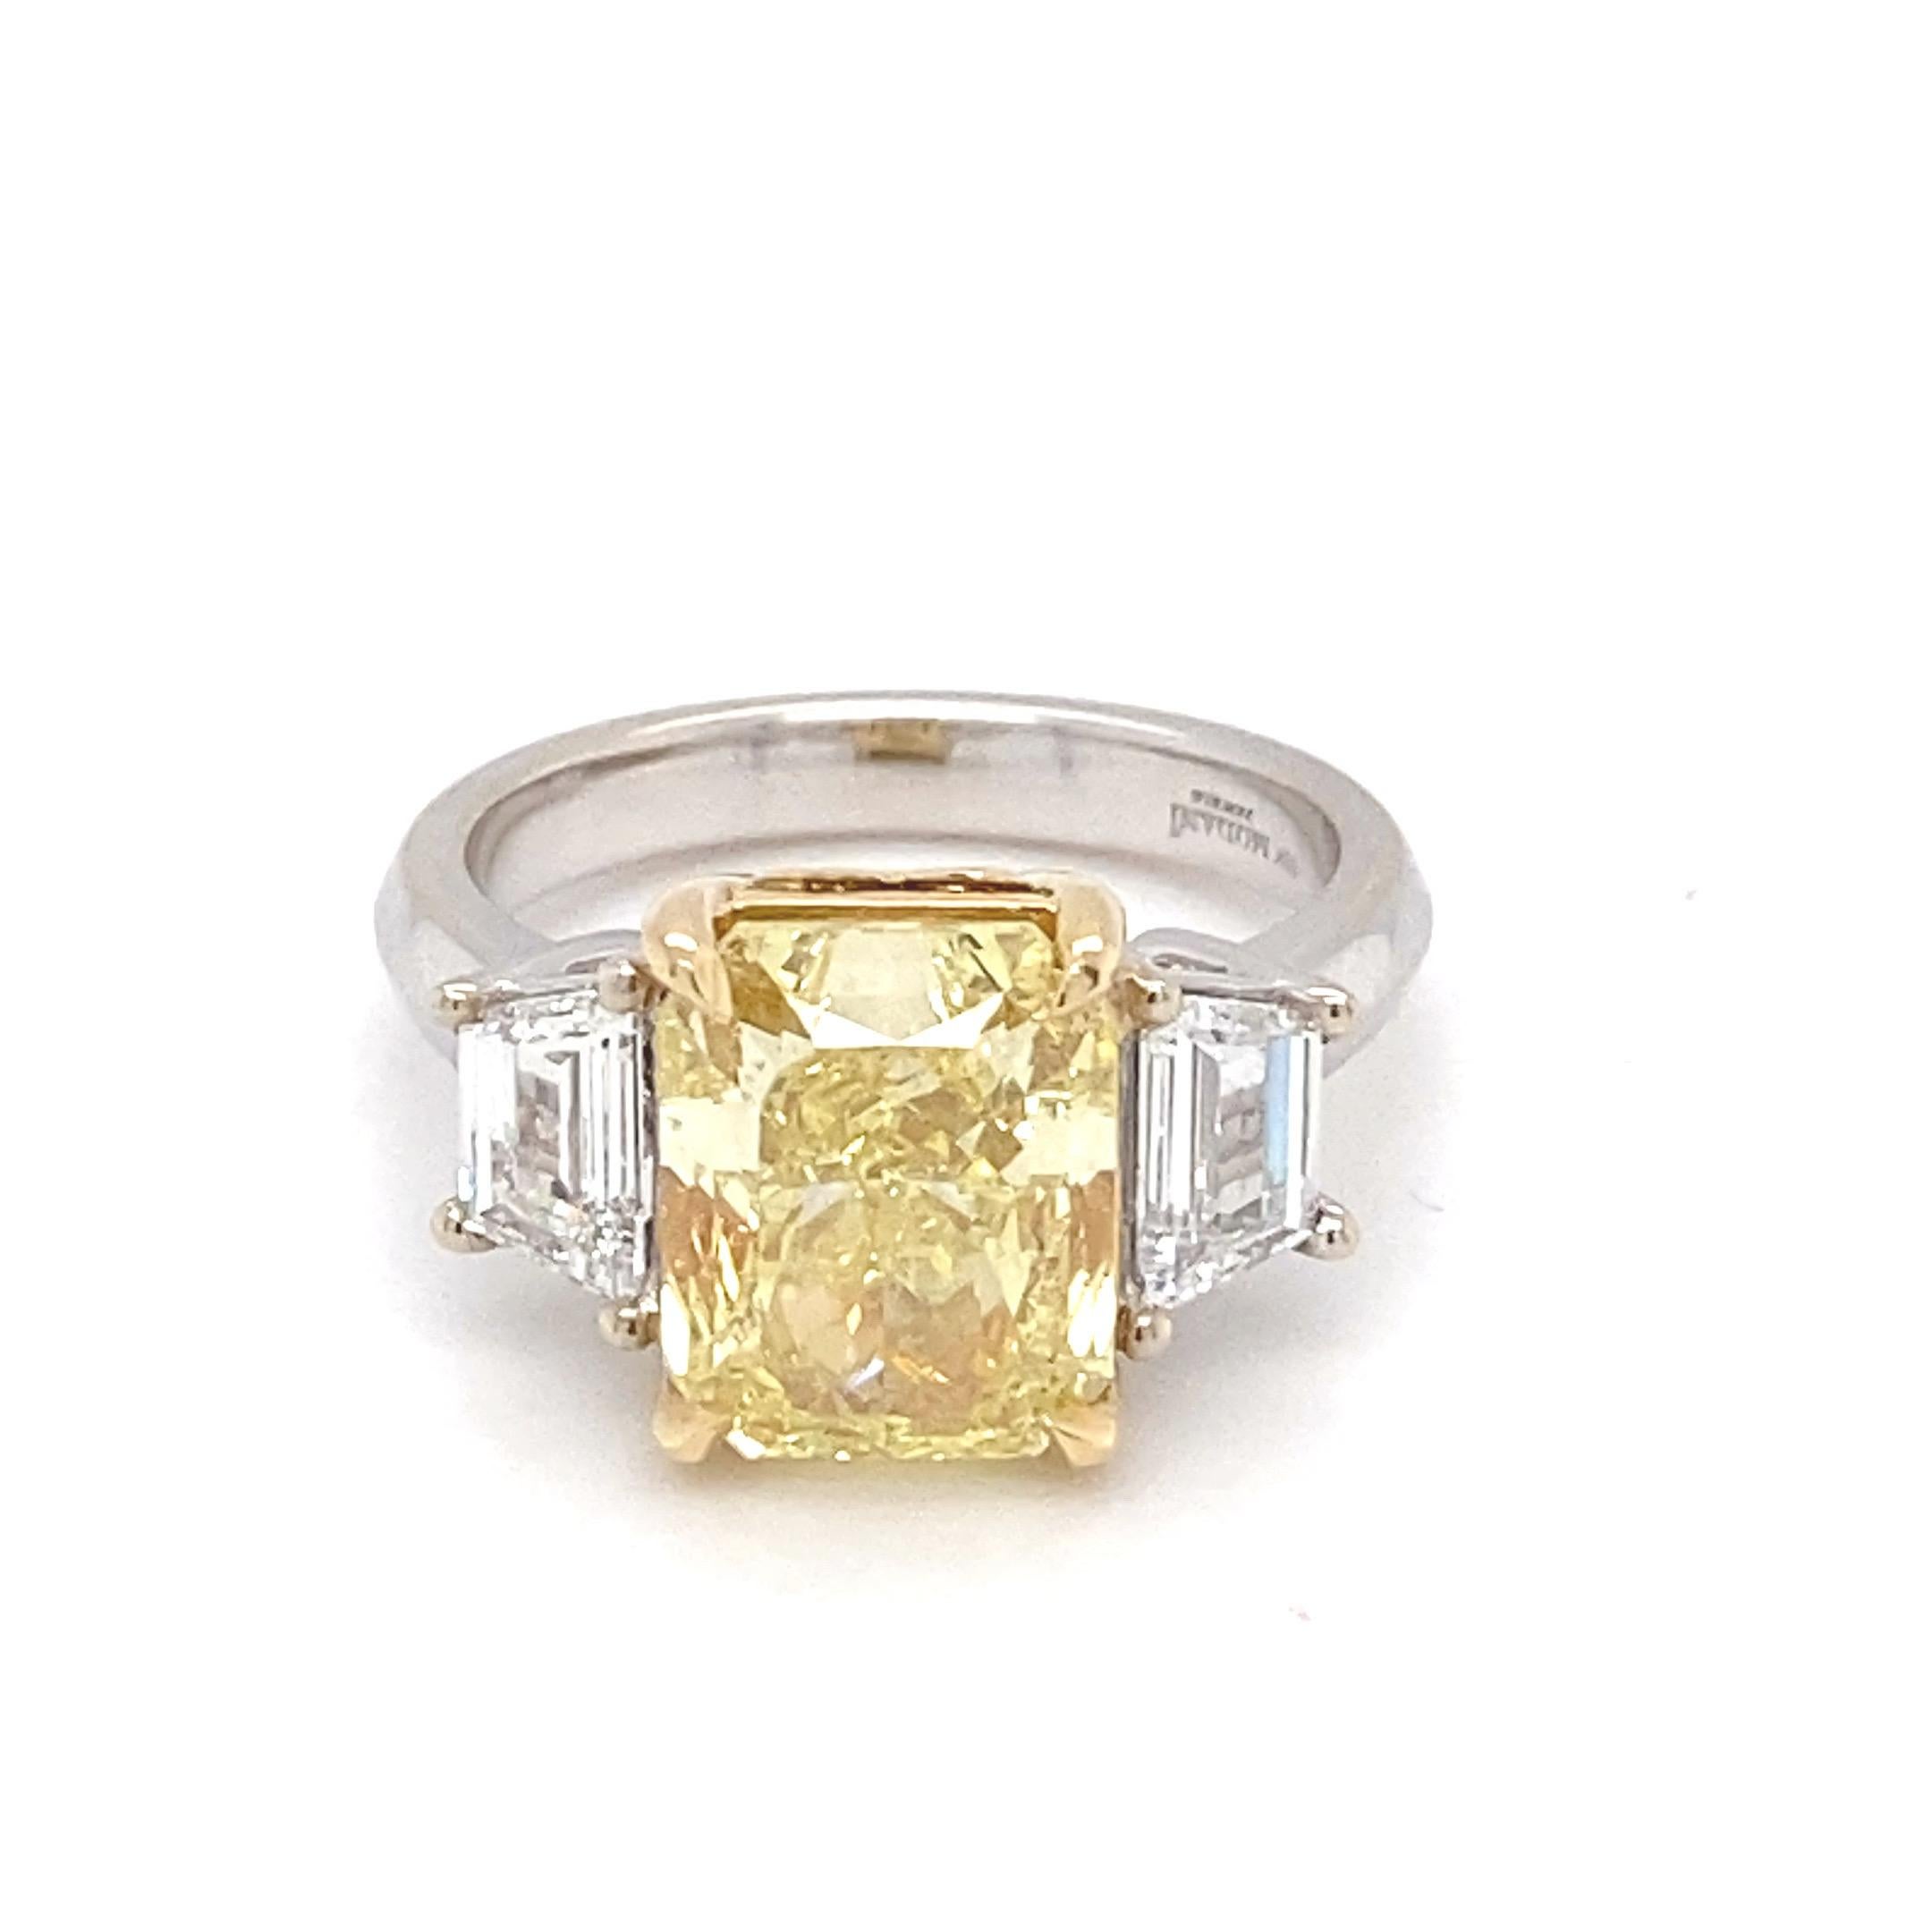 Dieser prächtige Ring rühmt sich mit einem GIA-zertifizierten 5,01 Karat intensiv gelben Kissen-Diamanten als Mittelstein mit zwei trapezförmigen weißen Diamanten als Seitenstein. Der Mittelstein ist in Gelbgold gefasst, während die Seitensteine und